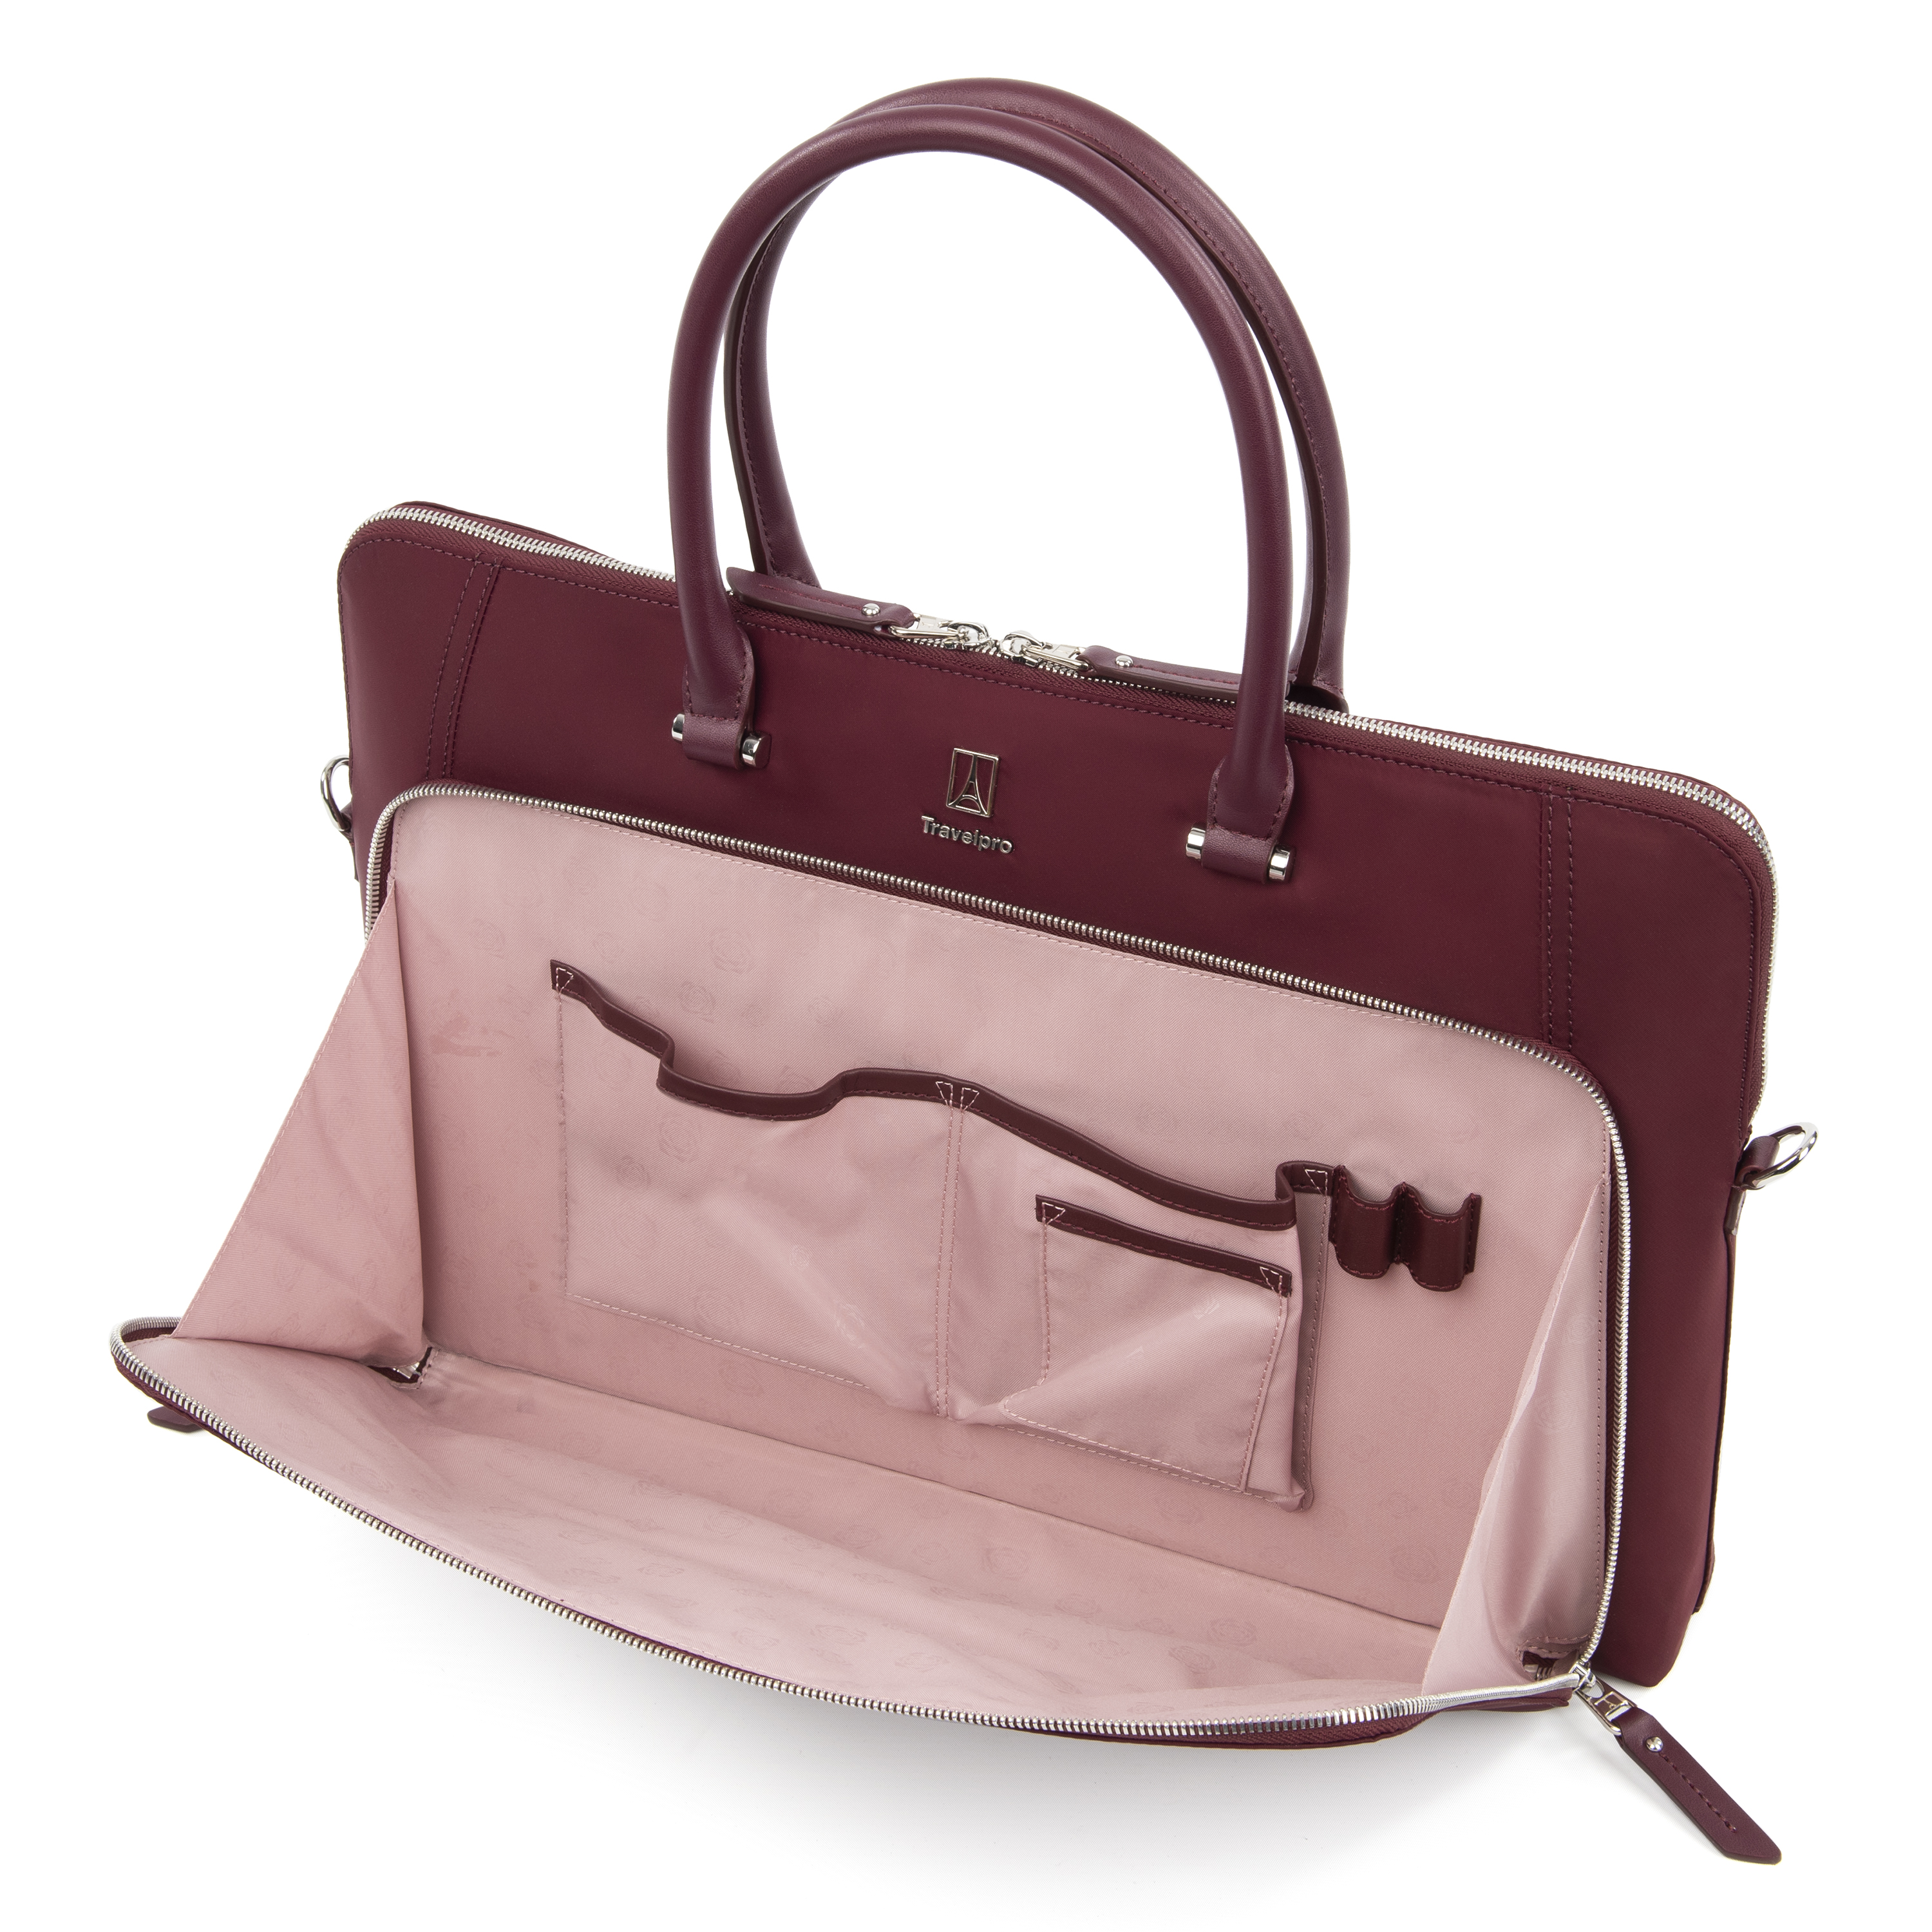 Travelpro Platinum Elite Women's Briefcase | eBay